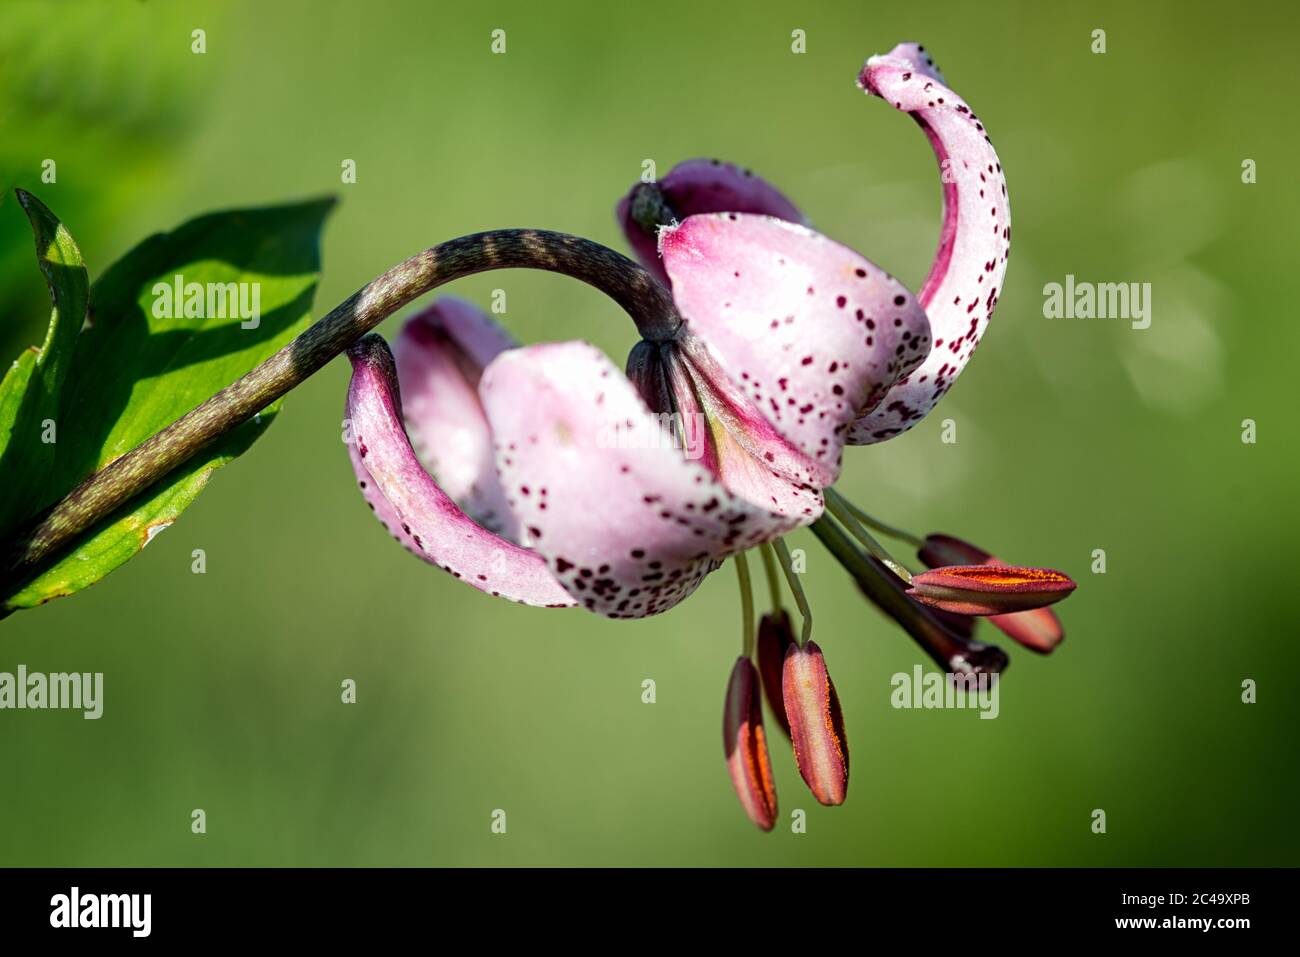 Die wilde Blume Lilium martagon hat einige Namen: Lilie von Istanbul oder Sultan Lily oder Dragon Lily. Das Profilbild zeigt alle Details der Blüte. Stockfoto